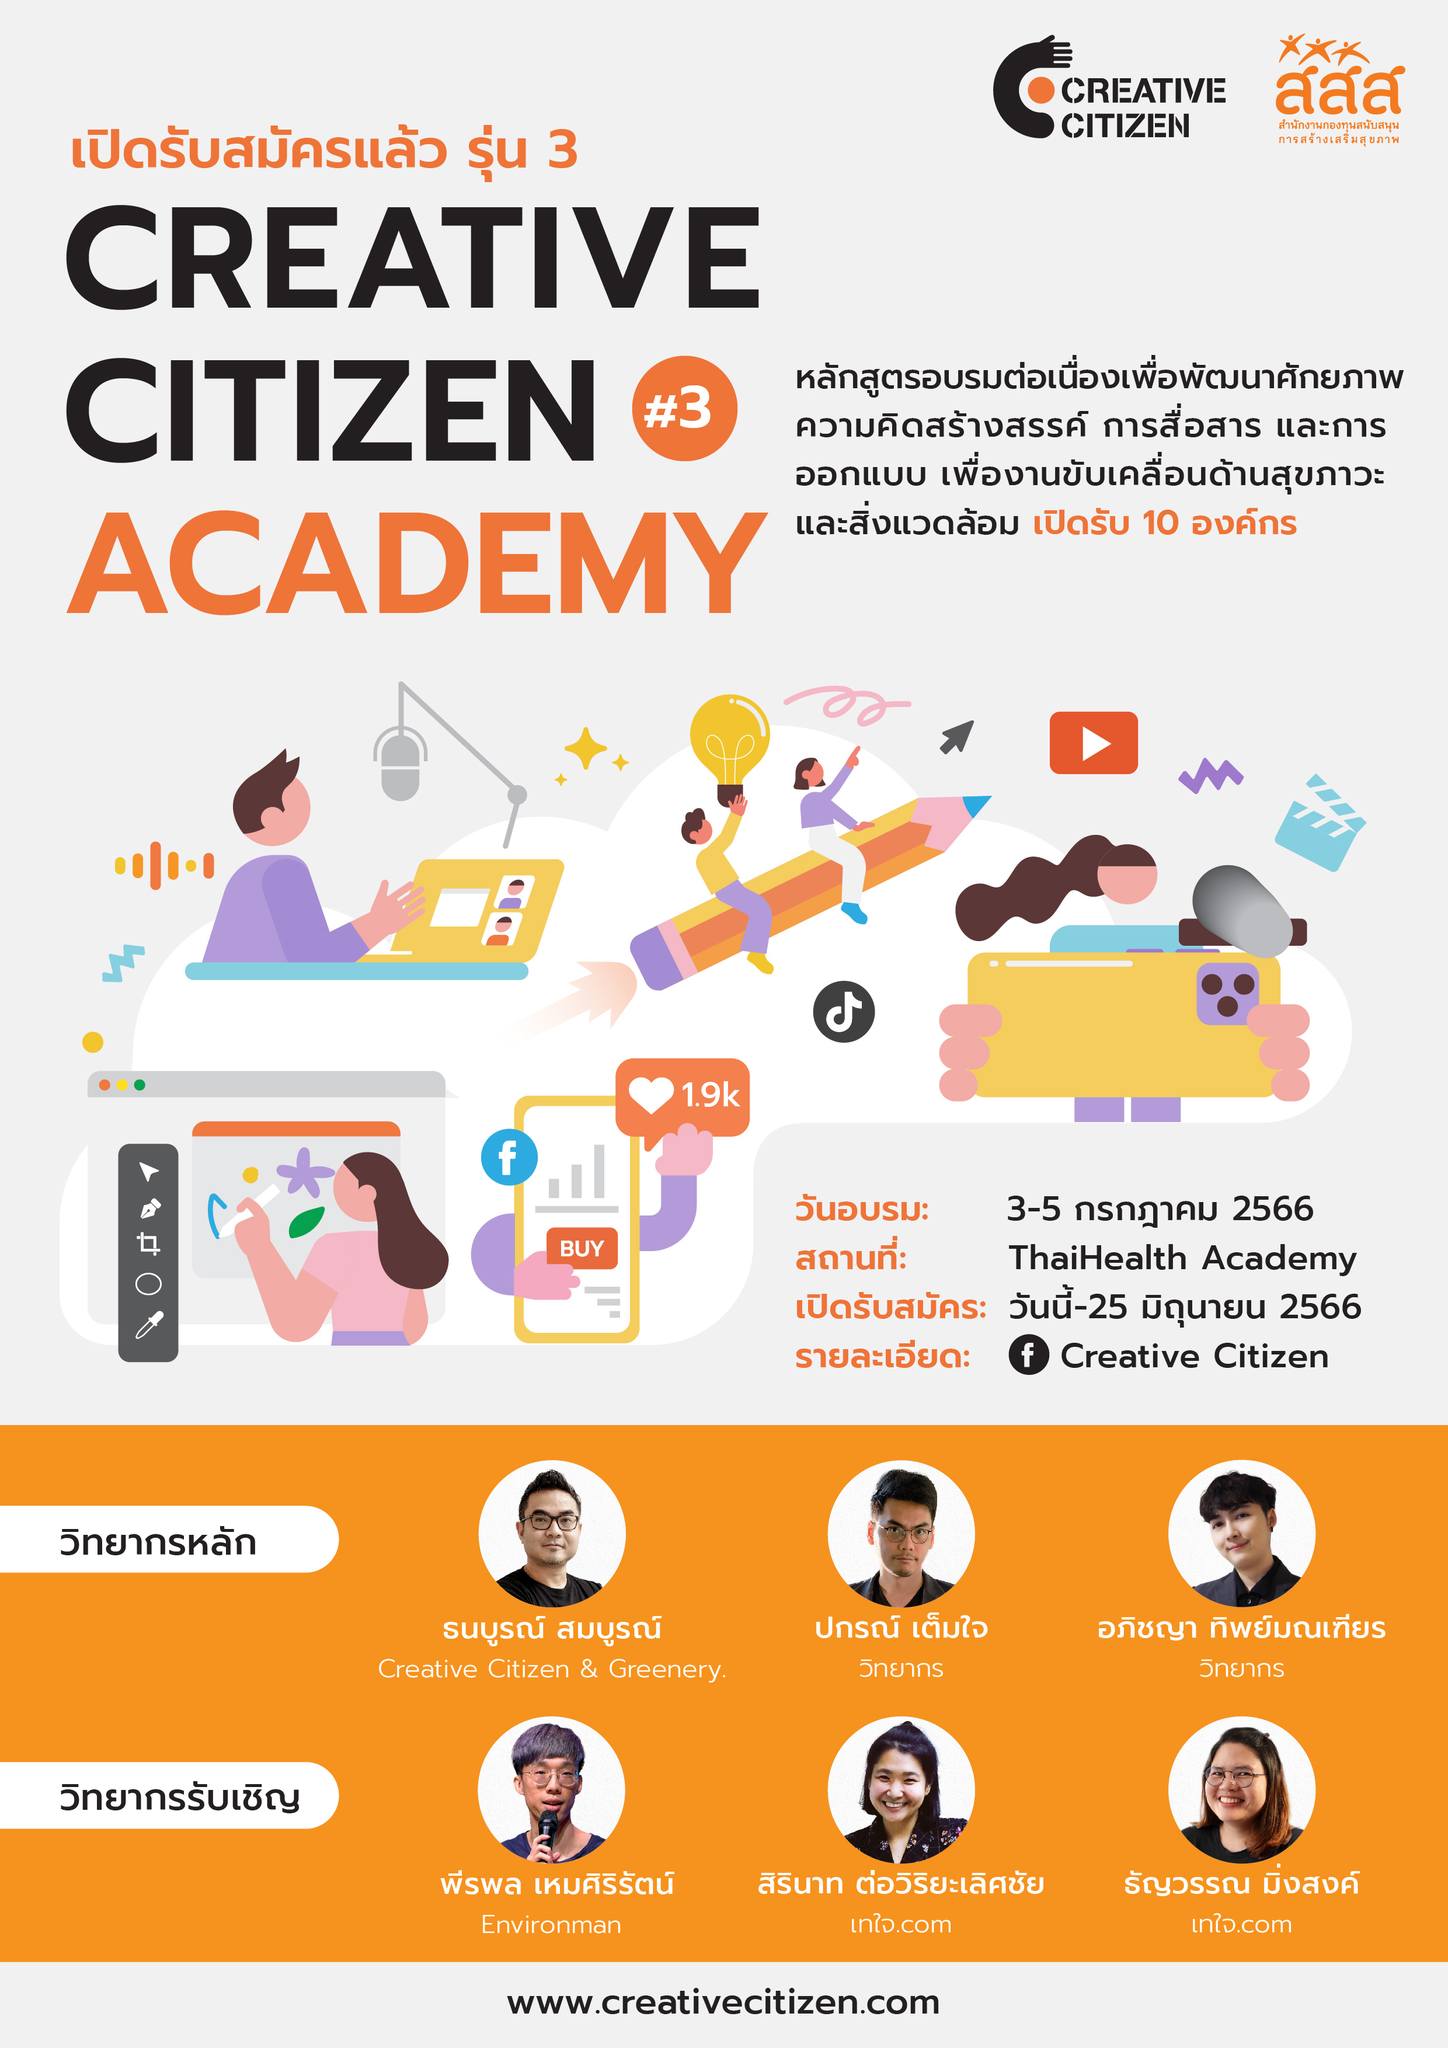 หลักสูตรอบรมต่อเนื่อง Creative Citizen Academy รุ่นที่ 3 เครือข่ายพลเมืองสร้างสรรค์ Creative Citizen